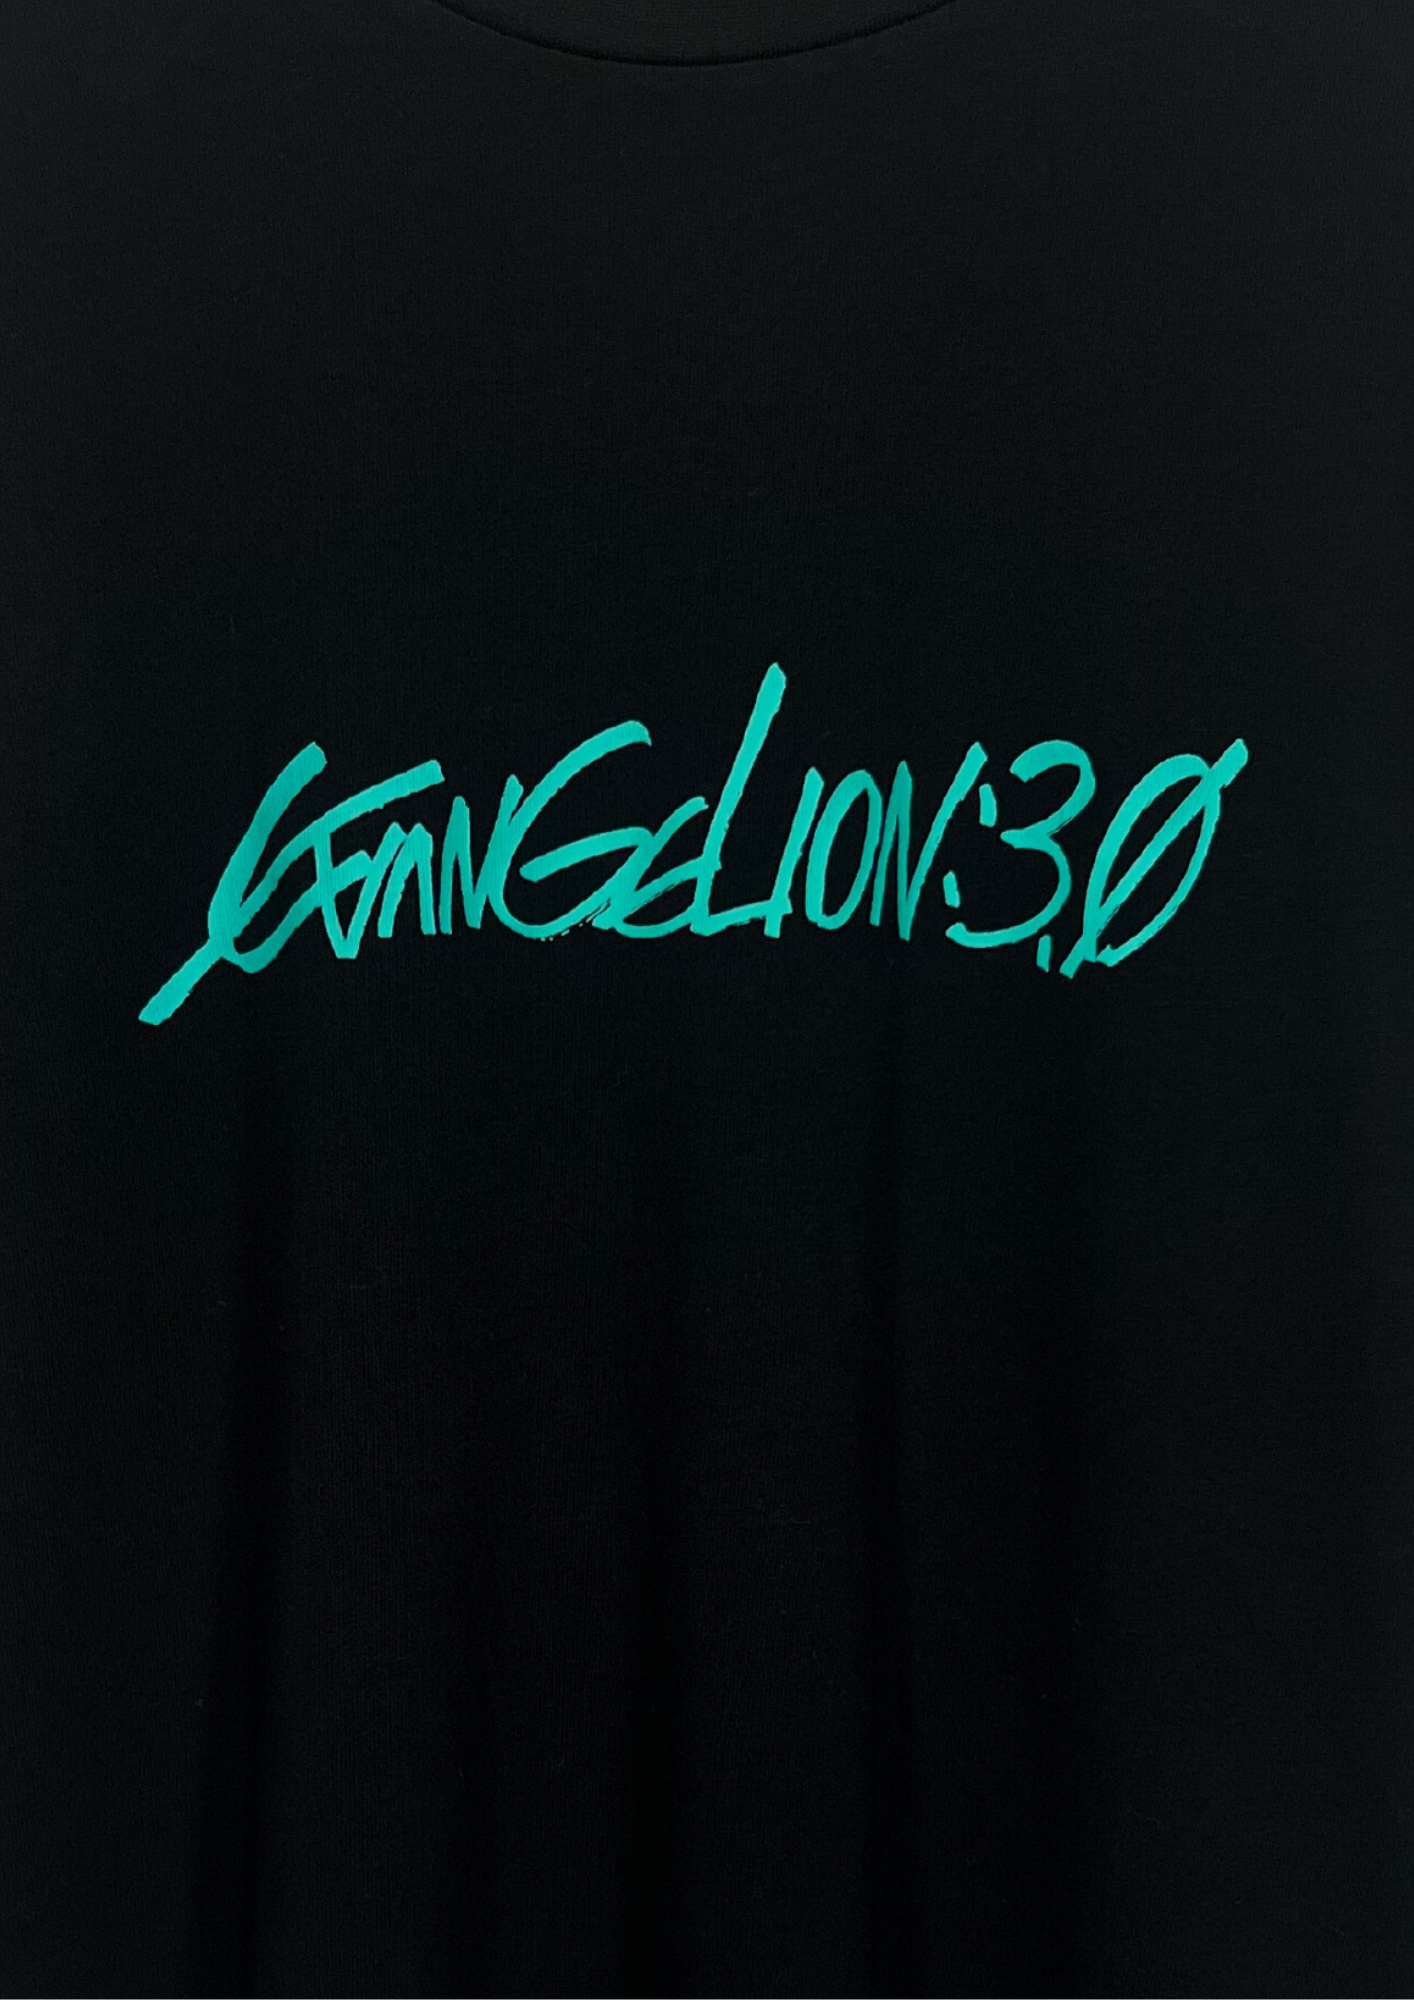 Neon Genesis Evangelion x GU Evangelion 3.0 T-shirt